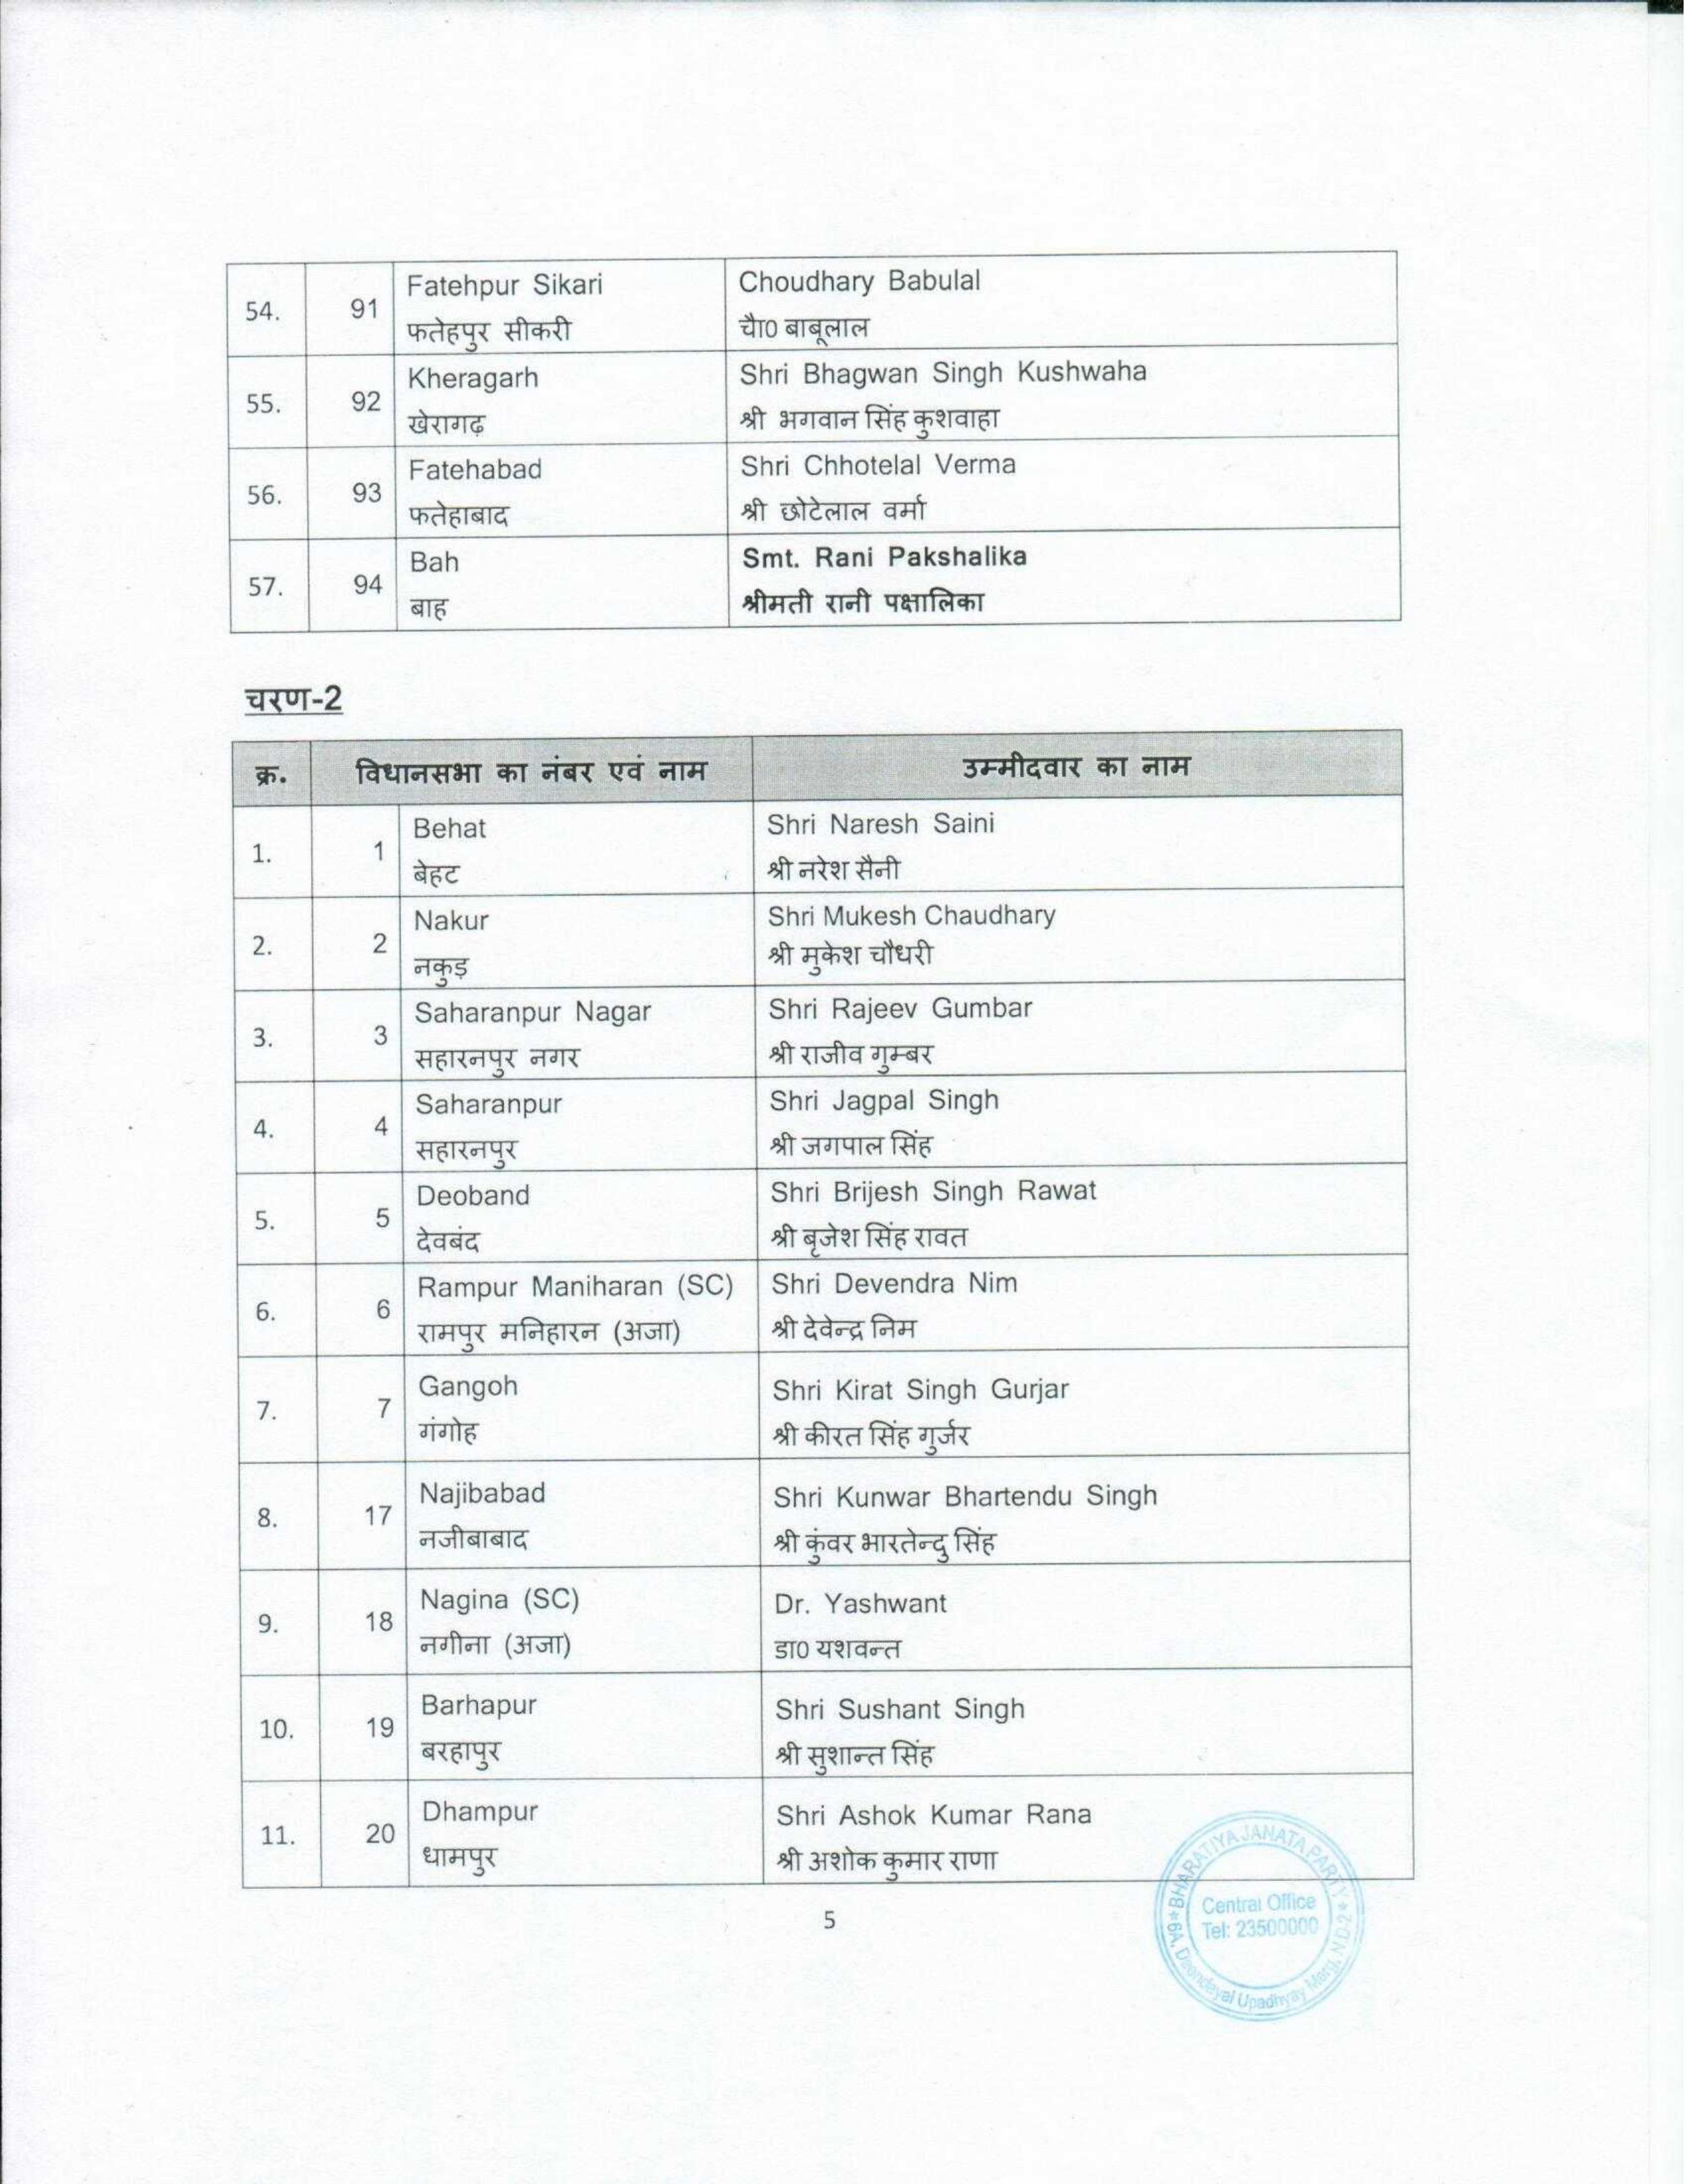 UP Election 2022 : उत्तर प्रदेश के लिए बीजेपी ने जारी की पहली सूची, यहां पढिए उम्मीदवारों की पूरी लिस्ट